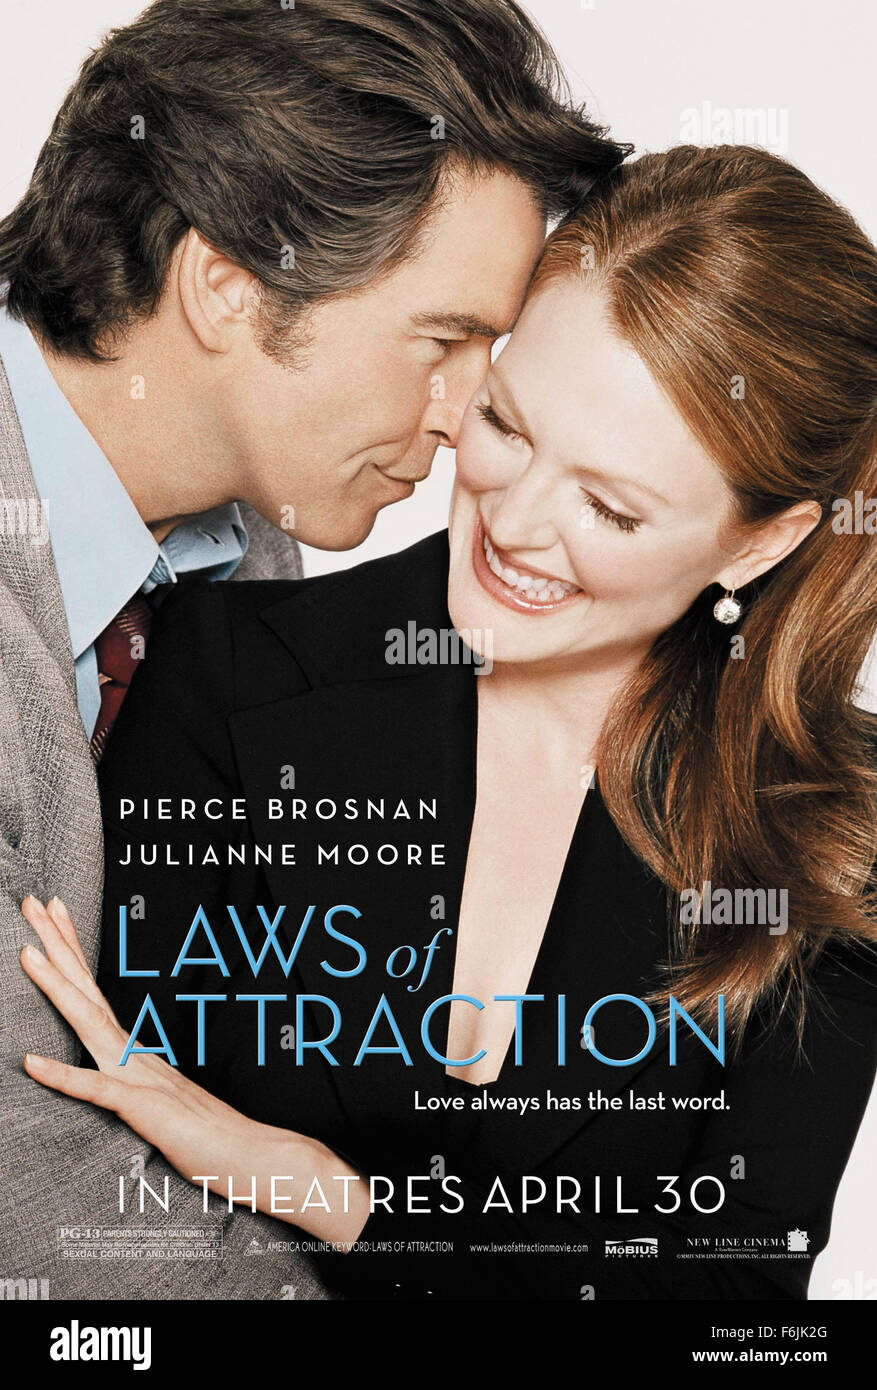 Fecha de lanzamiento 30 de abril de 2004. Título de la película Leyes de atracción